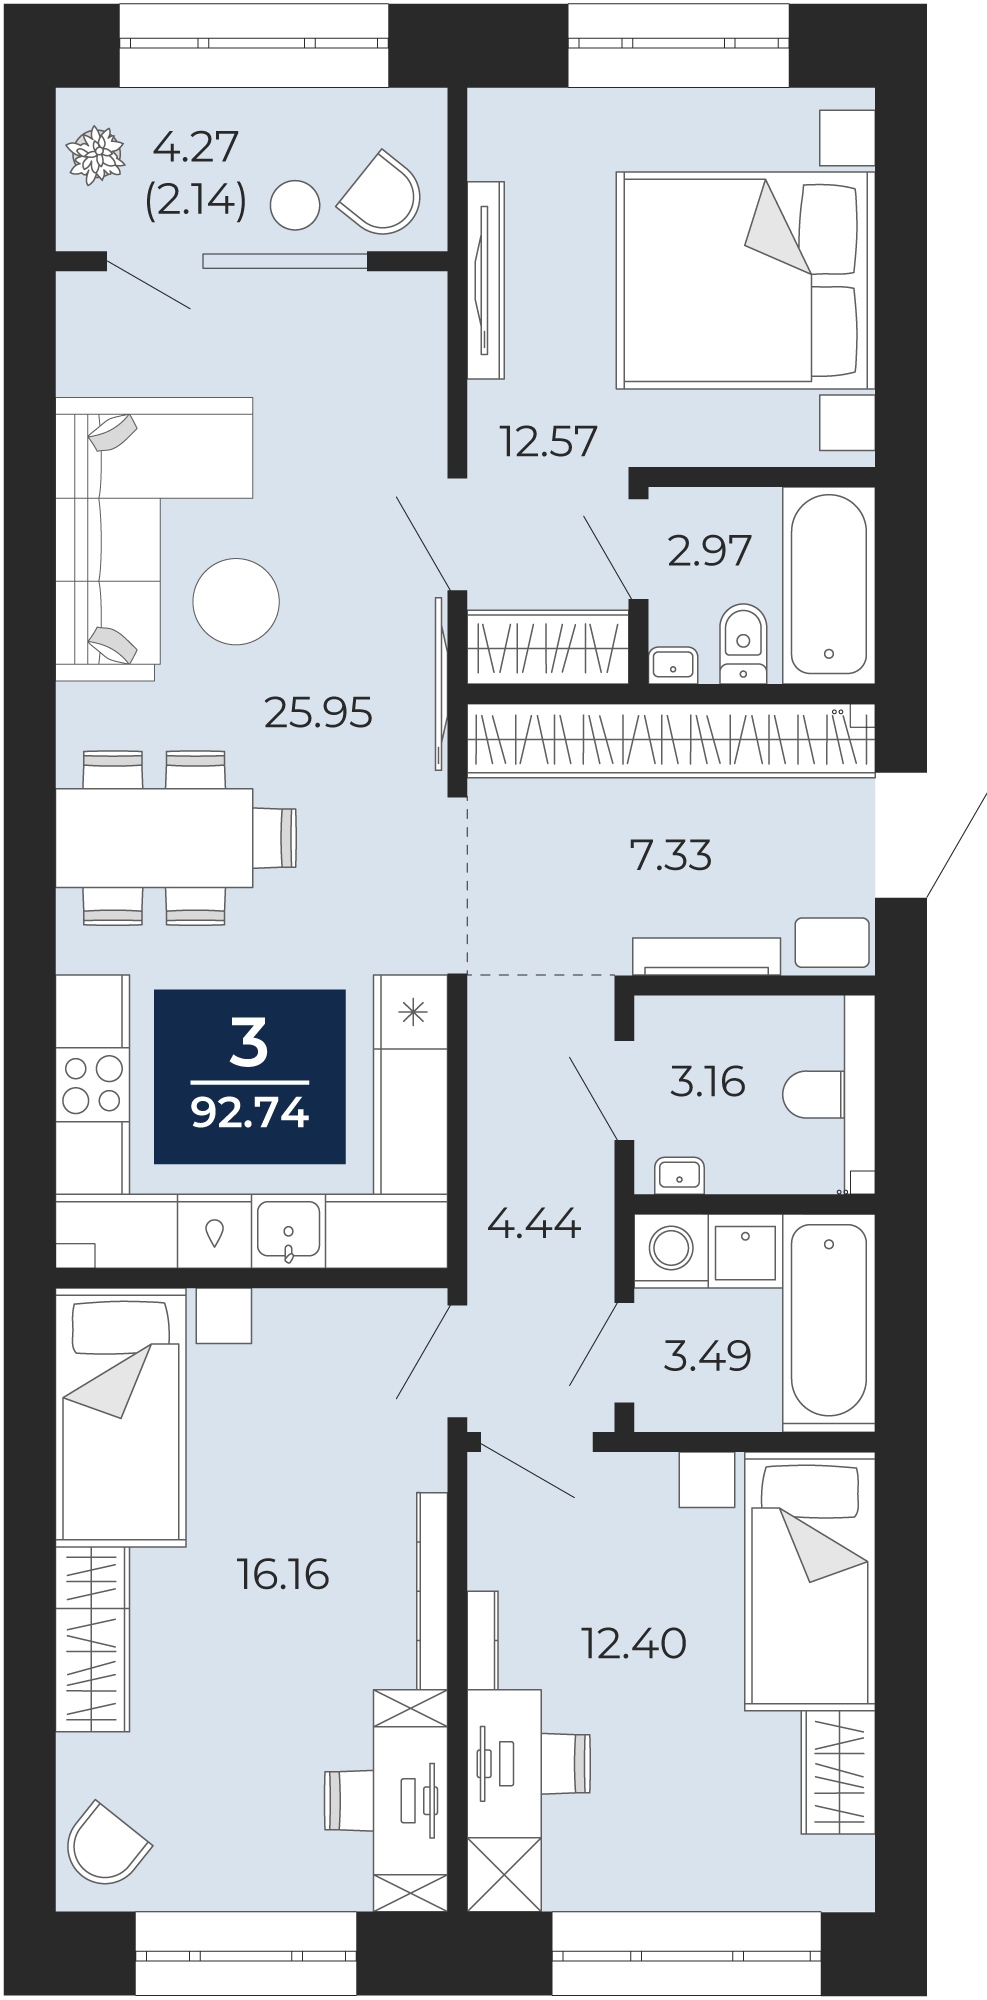 Квартира № 191, 3-комнатная, 92.74 кв. м, 12 этаж